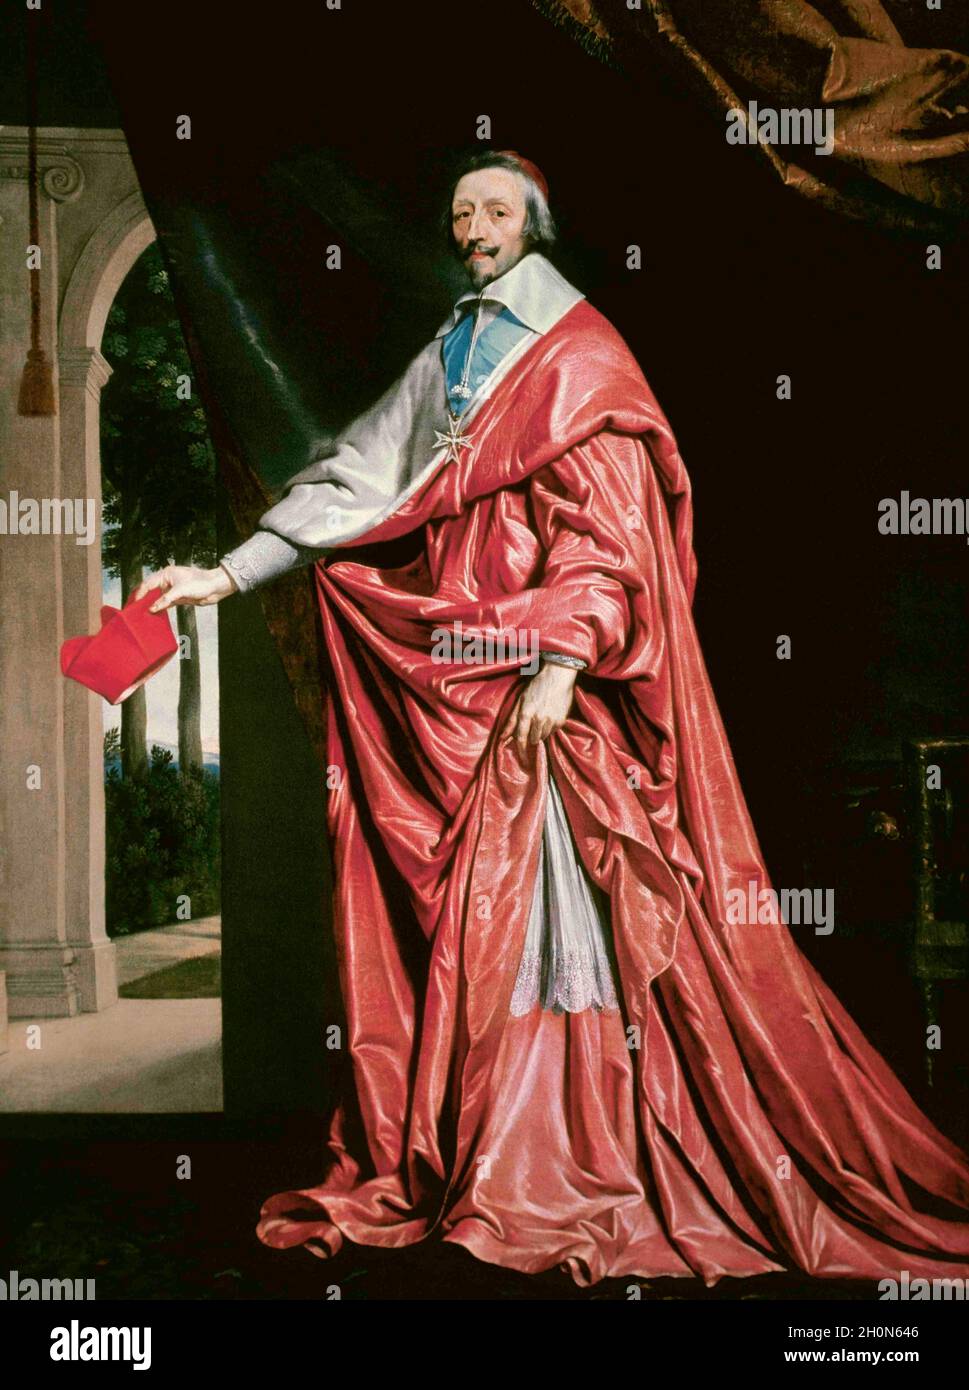 Kardinal Armand Jean du Plessis (1585-1642), bekannt als Kardinal de Richelieu. Französischer Geistlicher und Staatsmann. Er war Chief Minister von König Louis XIII. Stockfoto